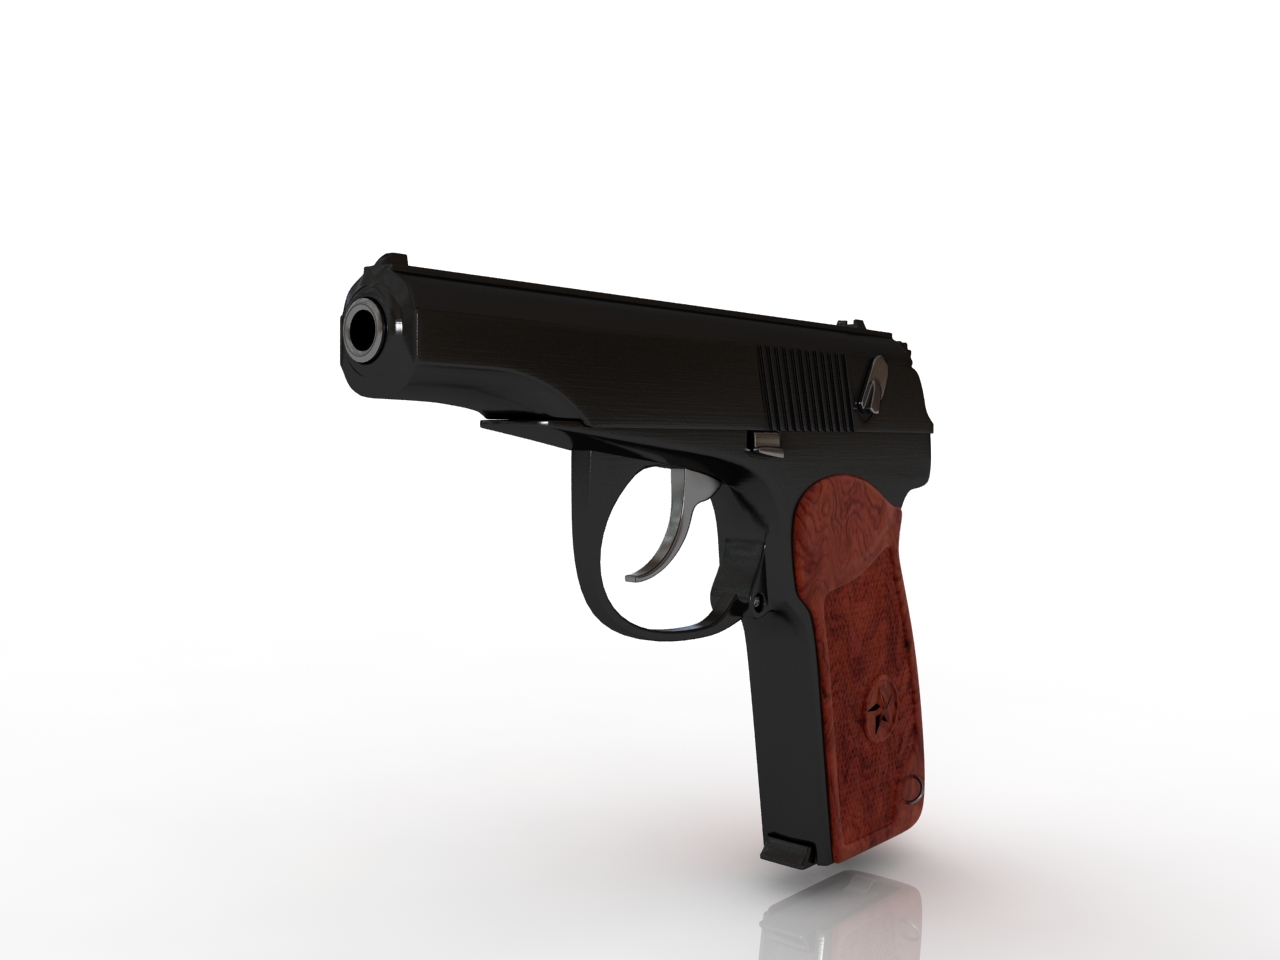 3д модель пистолета Макарова для 3д принтера. 3d модели для пистолета Макарова. Pm model